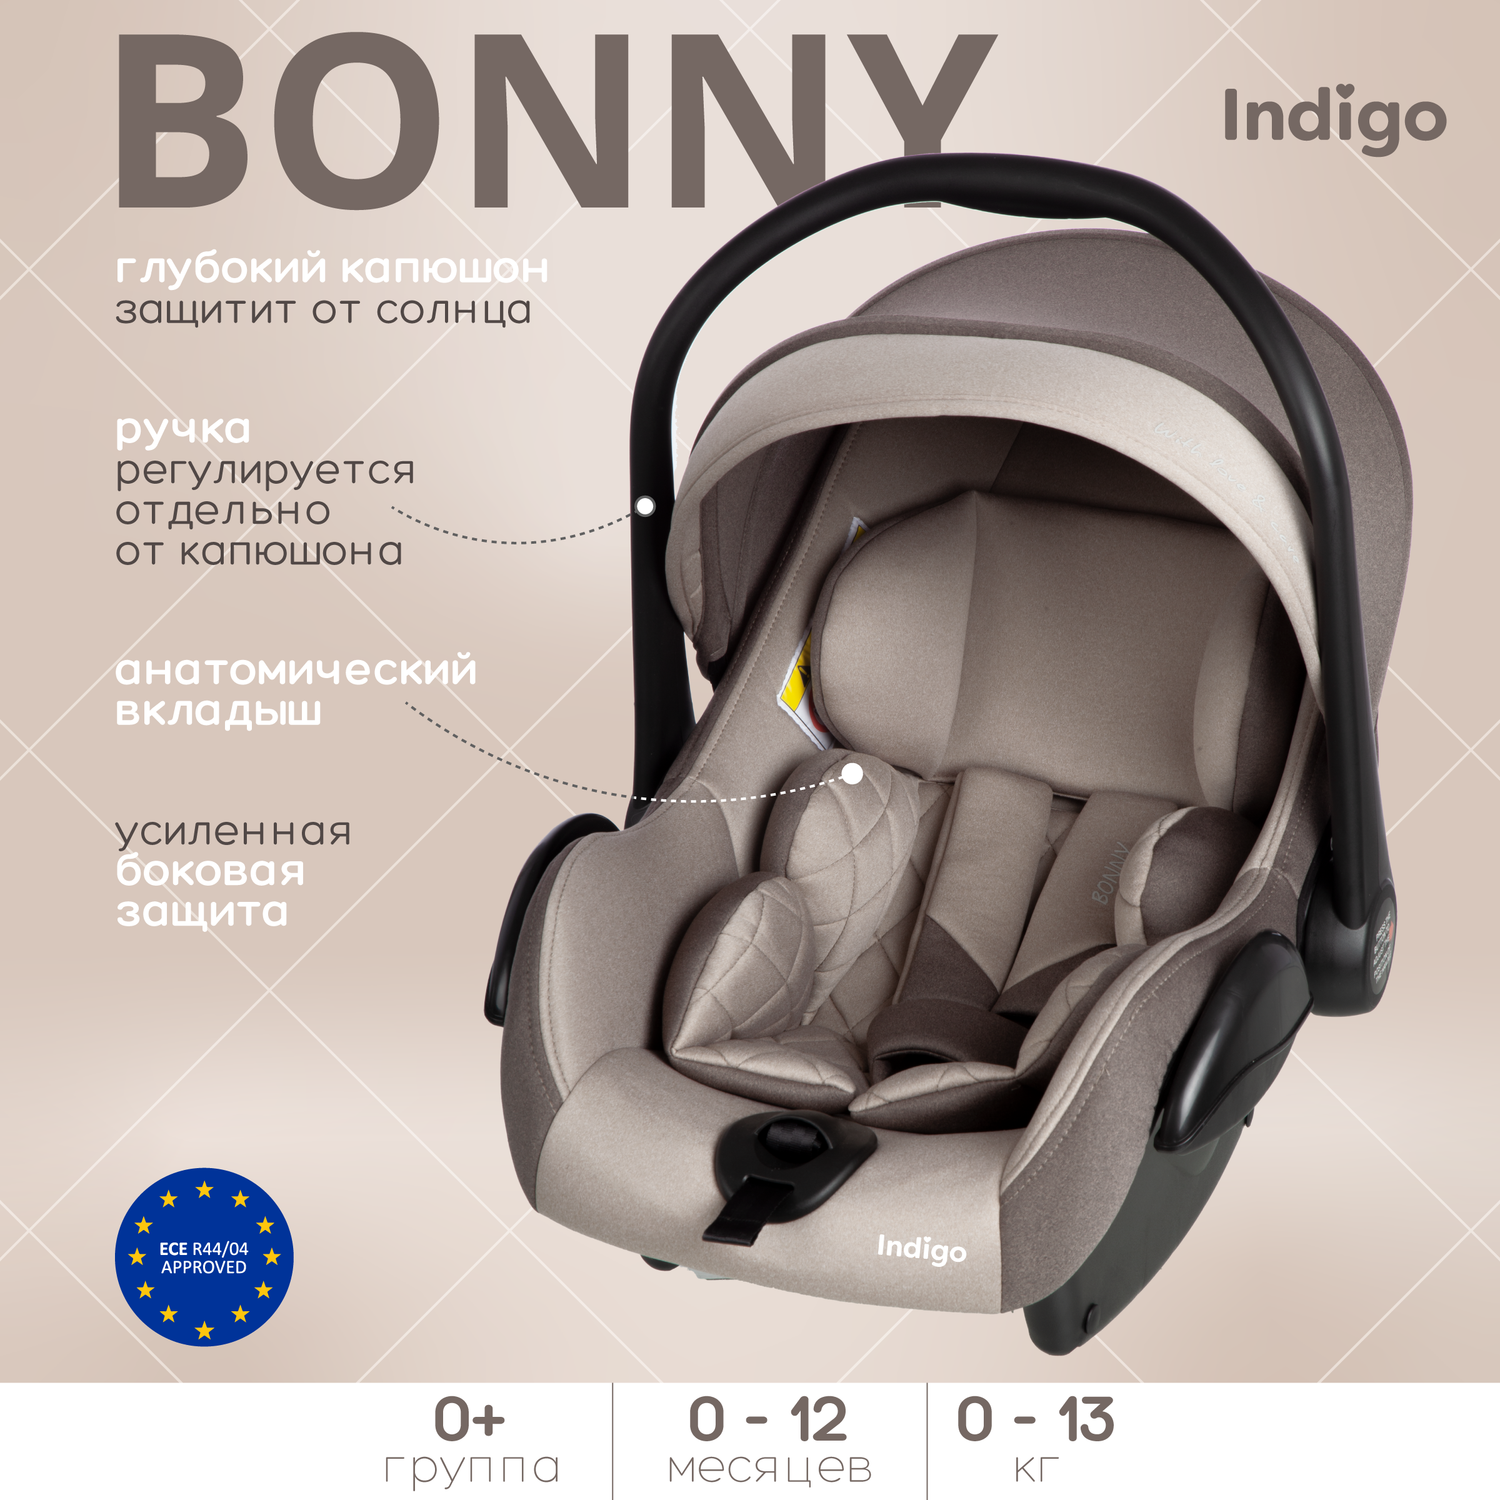 Автокресло Indigo BONNY группа 0+ 0-13 кг бежевый-коричневый - фото 1